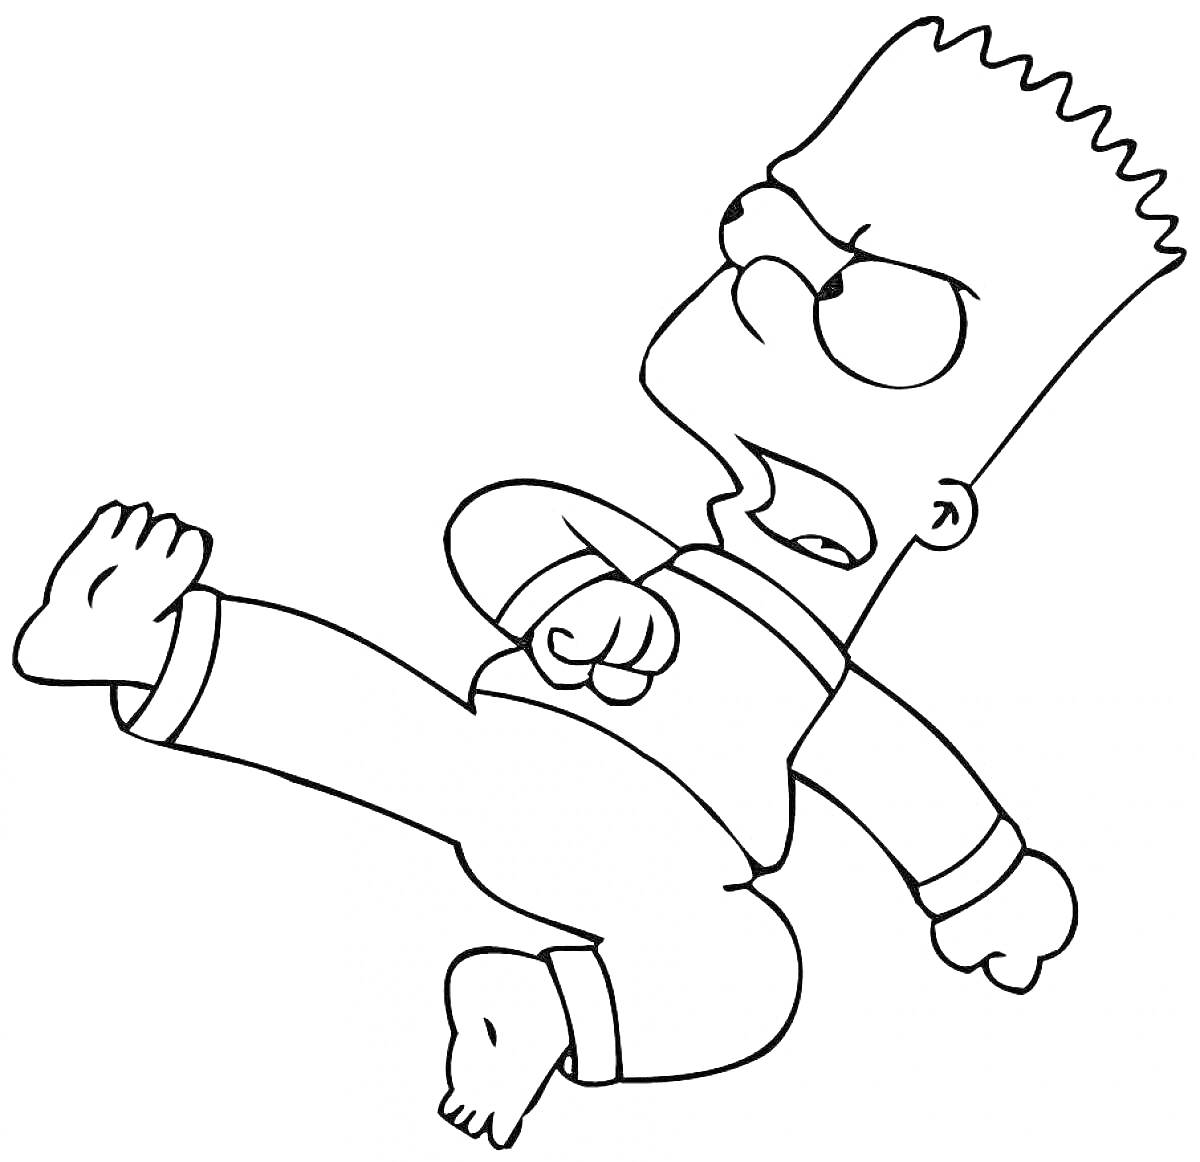 Барт Симпсон выполняет удар ногой